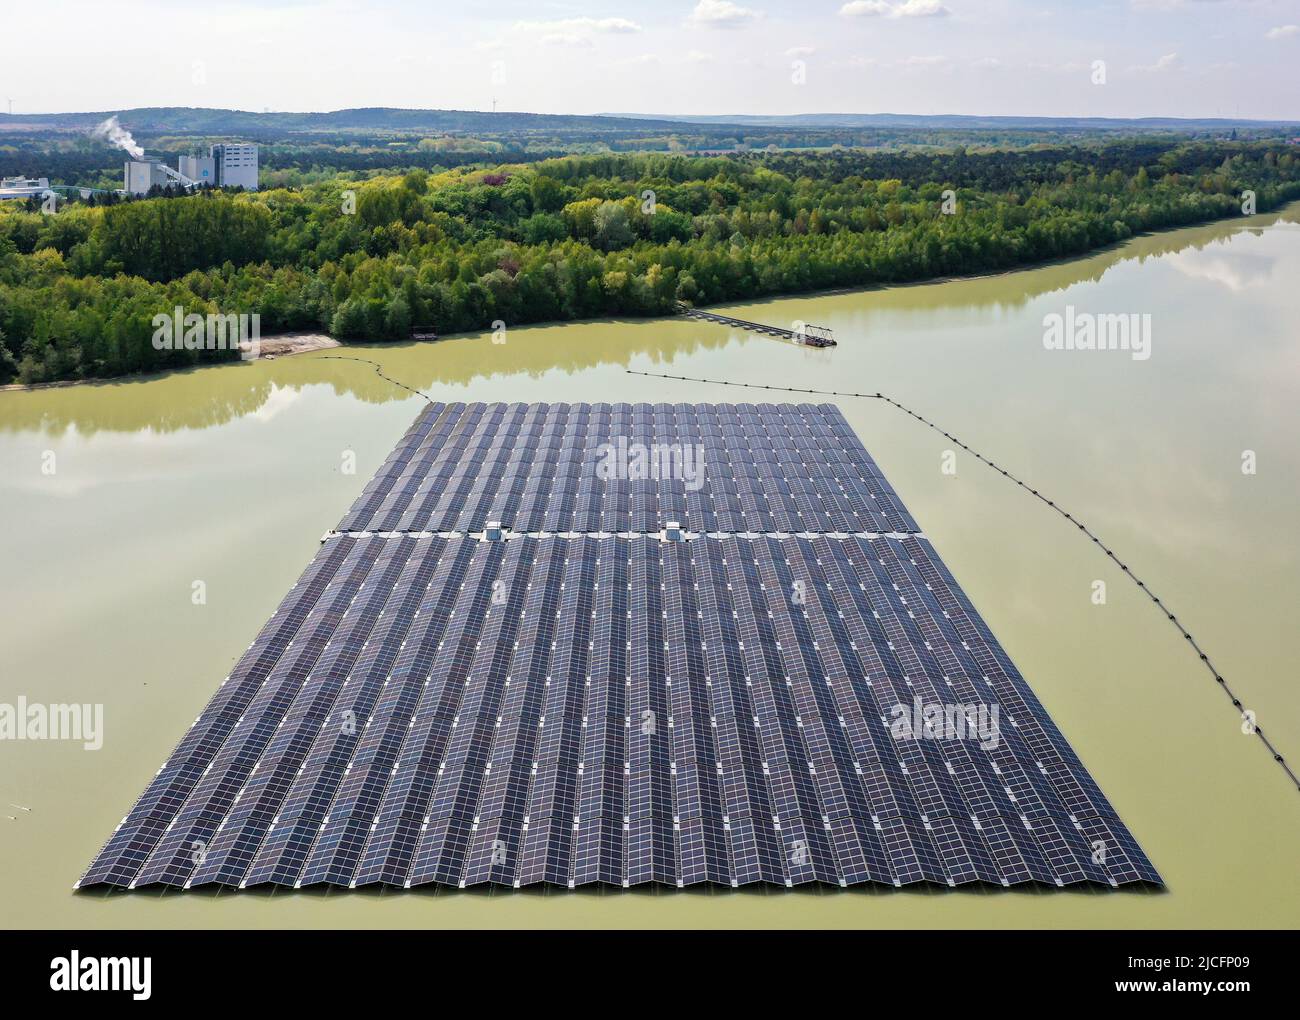 Haltern am See, Nordrhein-Westfalen, Deutschland - Deutschlands größter schwimmender Solarpark. 5 produzieren 800 Photovoltaikelemente jährlich 3 Millionen Kilowattstunden Strom aus Solarenergie. Stockfoto